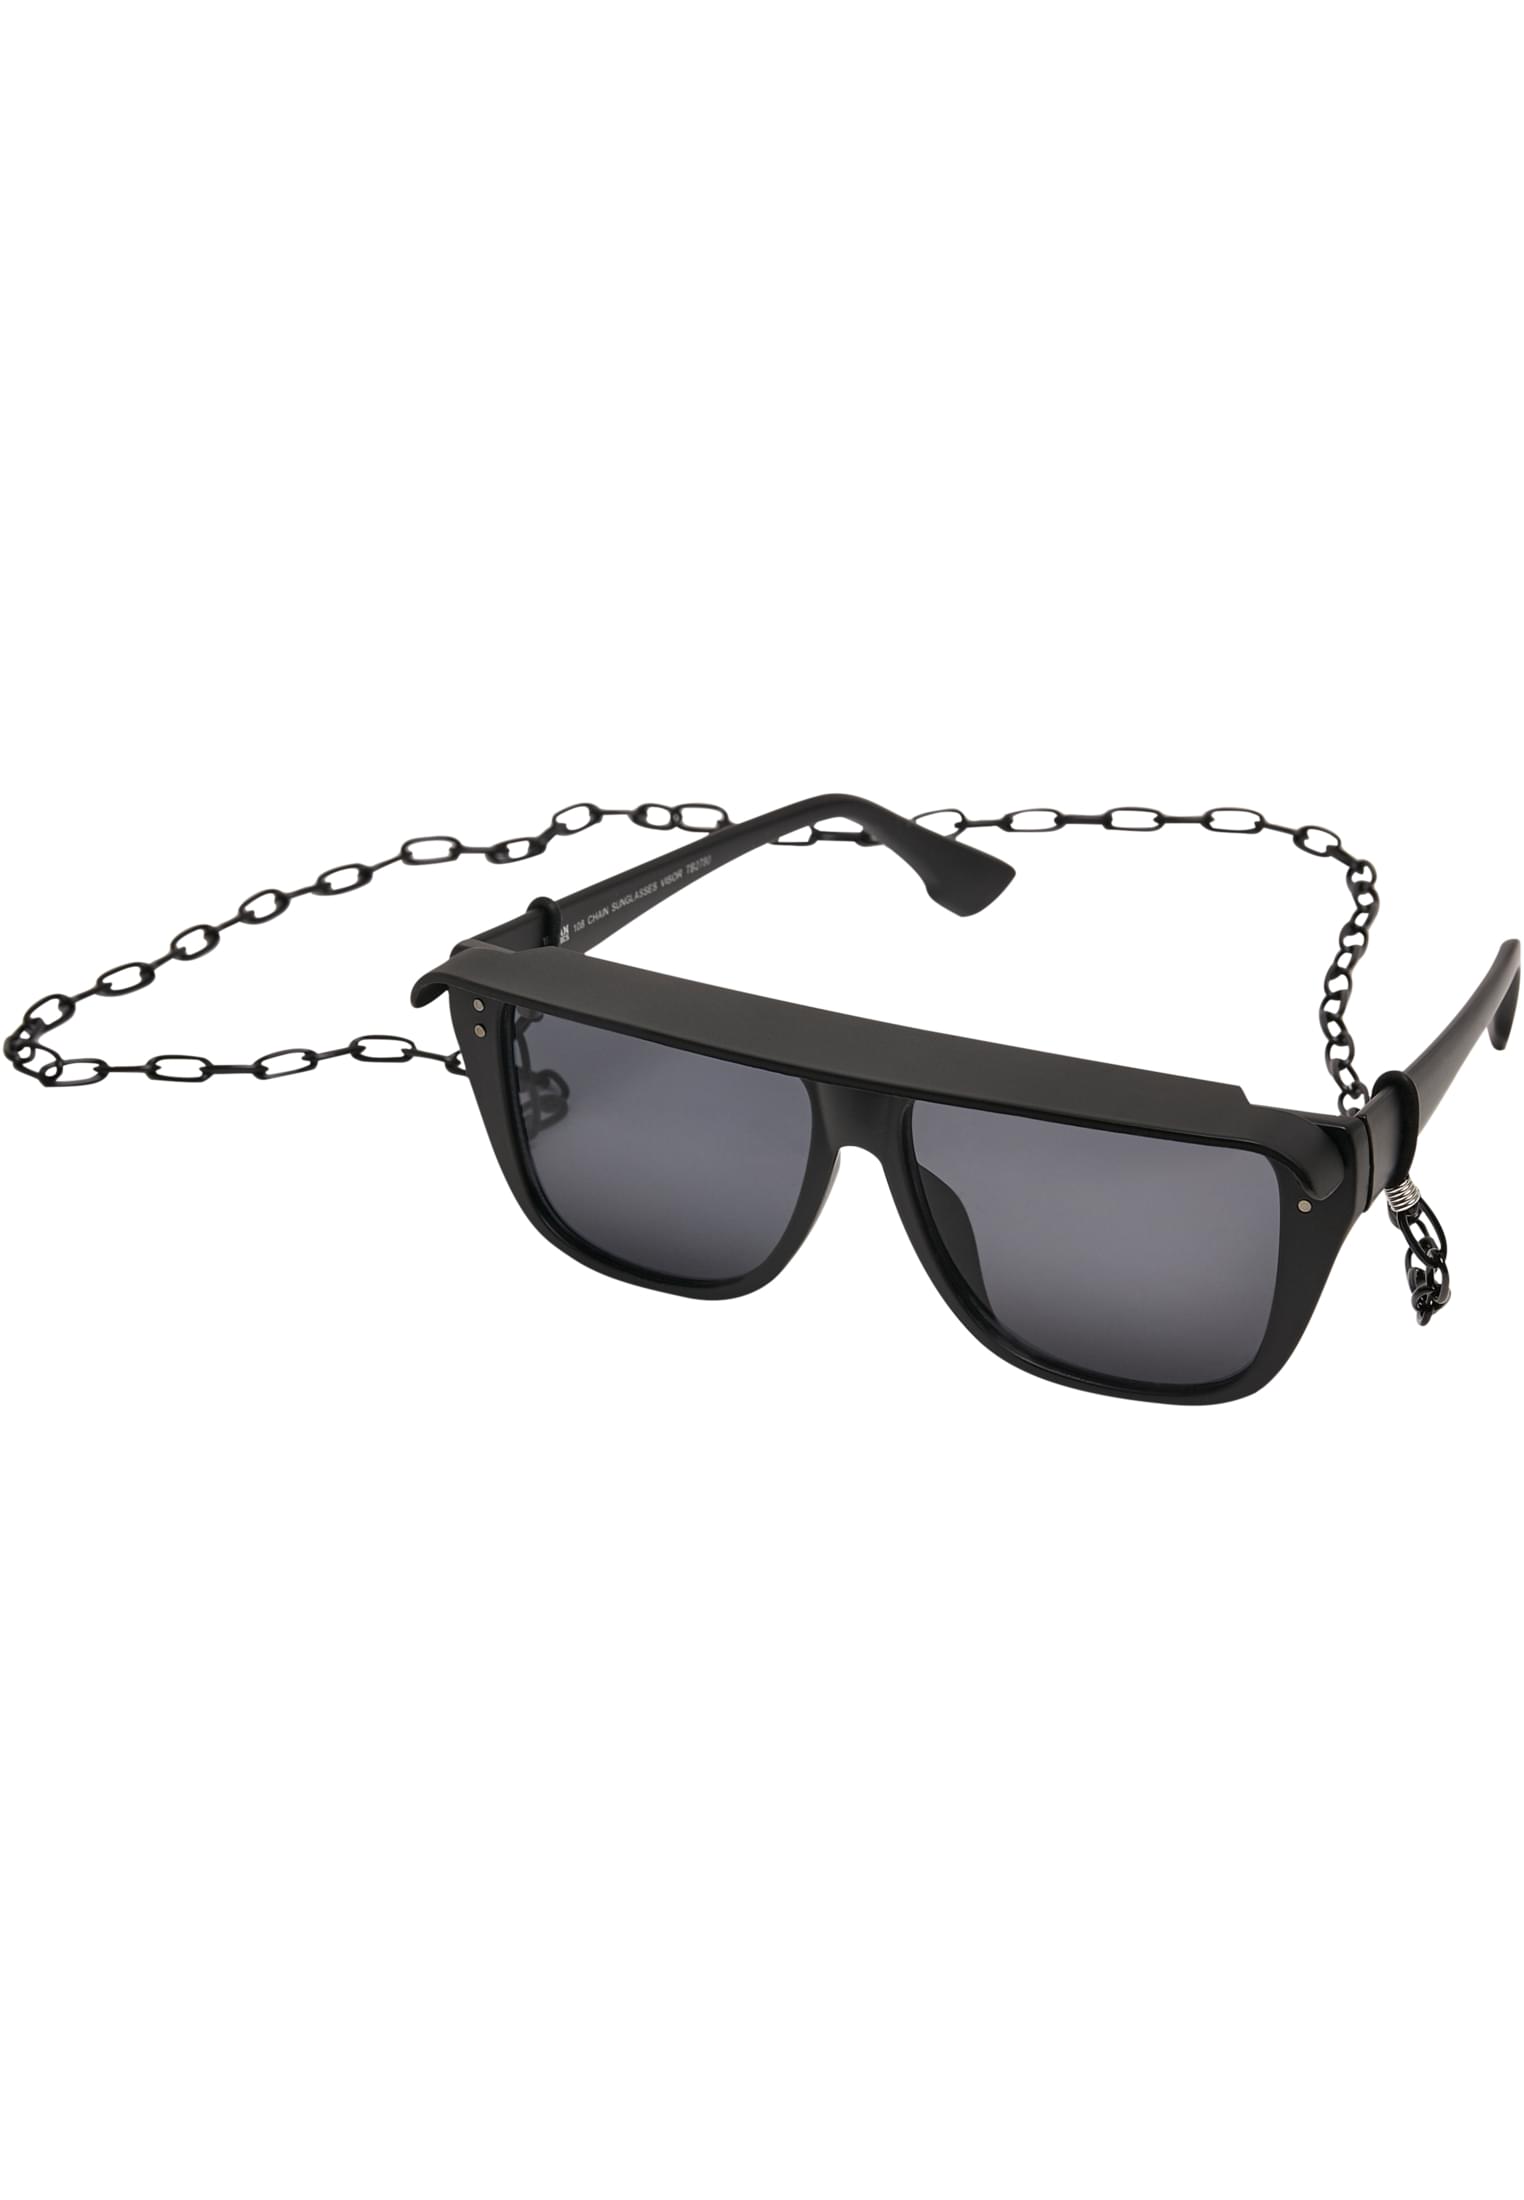 108 Visor-TB2780 Sunglasses Chain